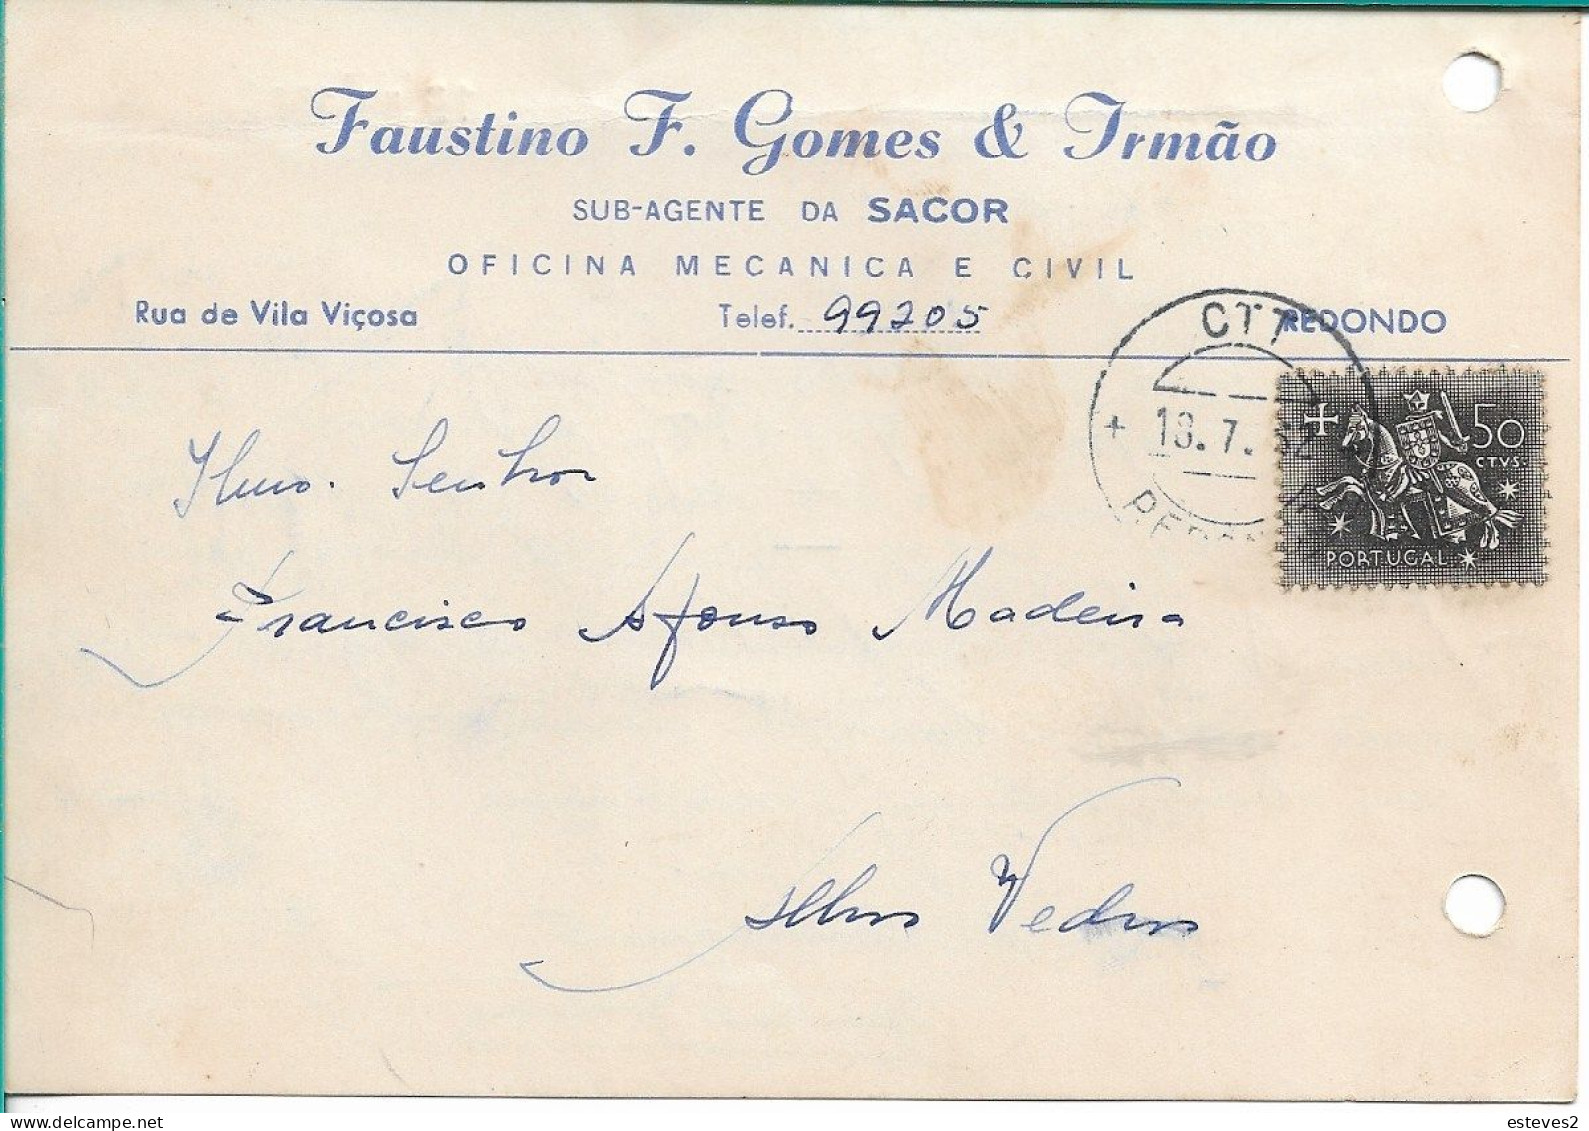 Portugal , 1962 , FAUSTINO F. GOMES & IRMÃO , Redondo , SACOR Agent ,  Commercial Postcard - Portugal